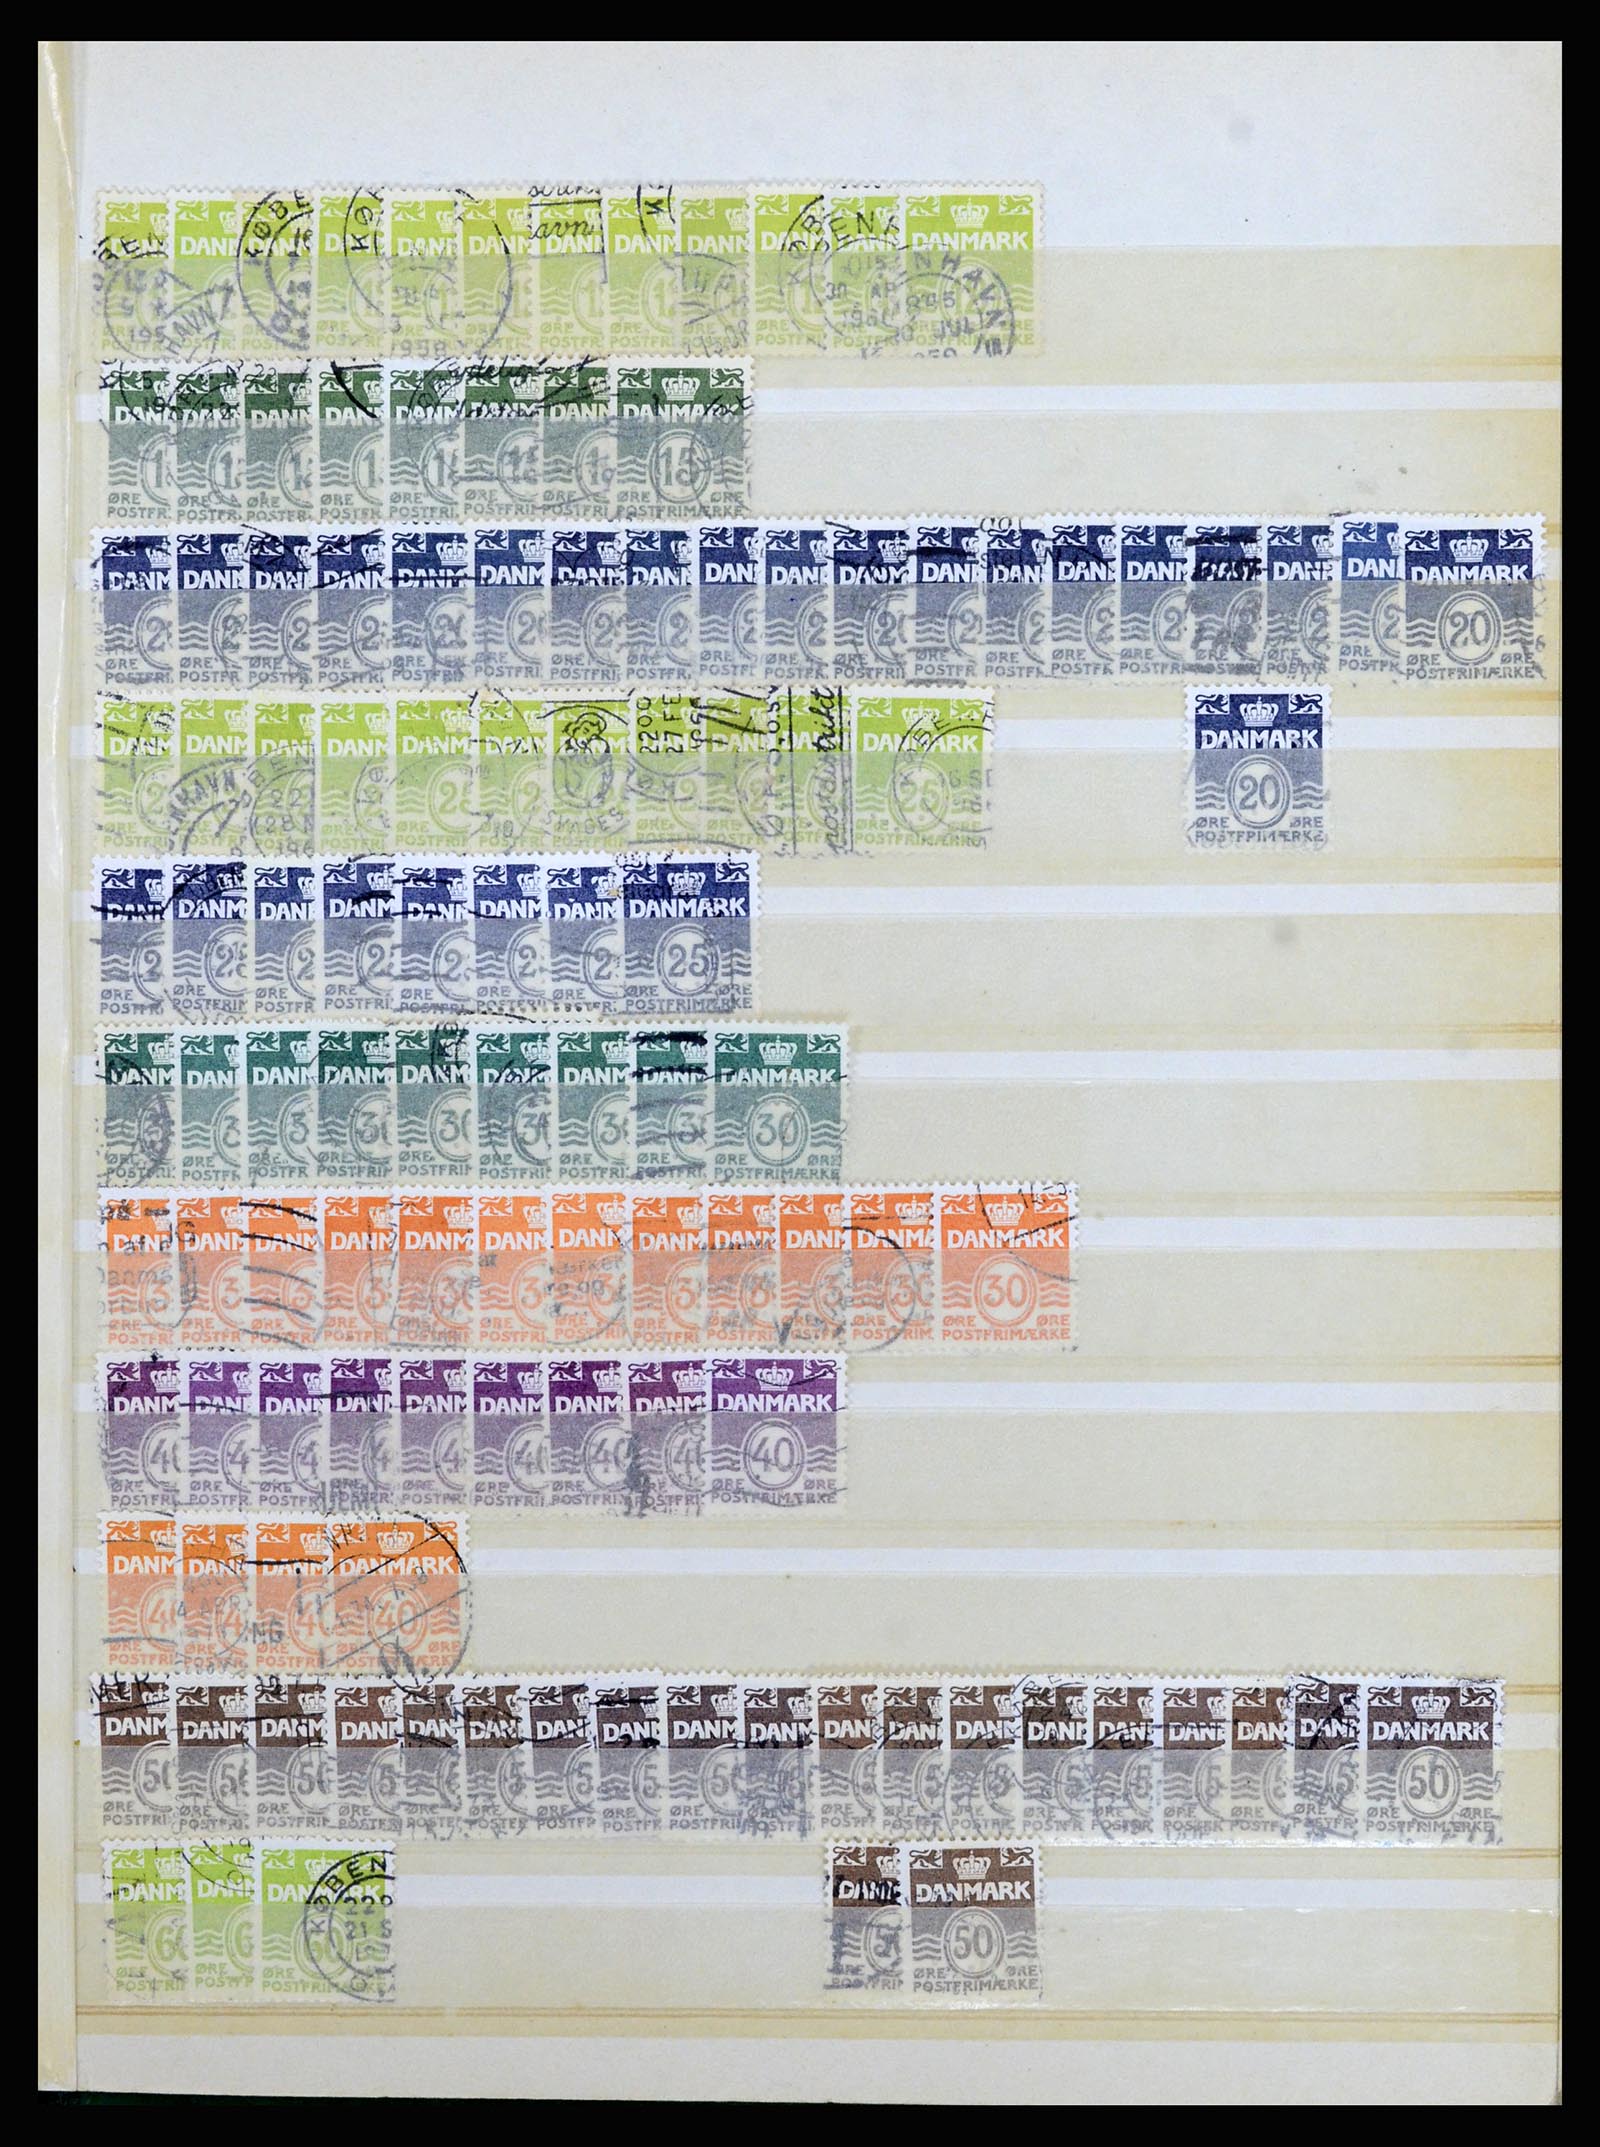 37056 030 - Postzegelverzameling 37056 Denemarken perfins.